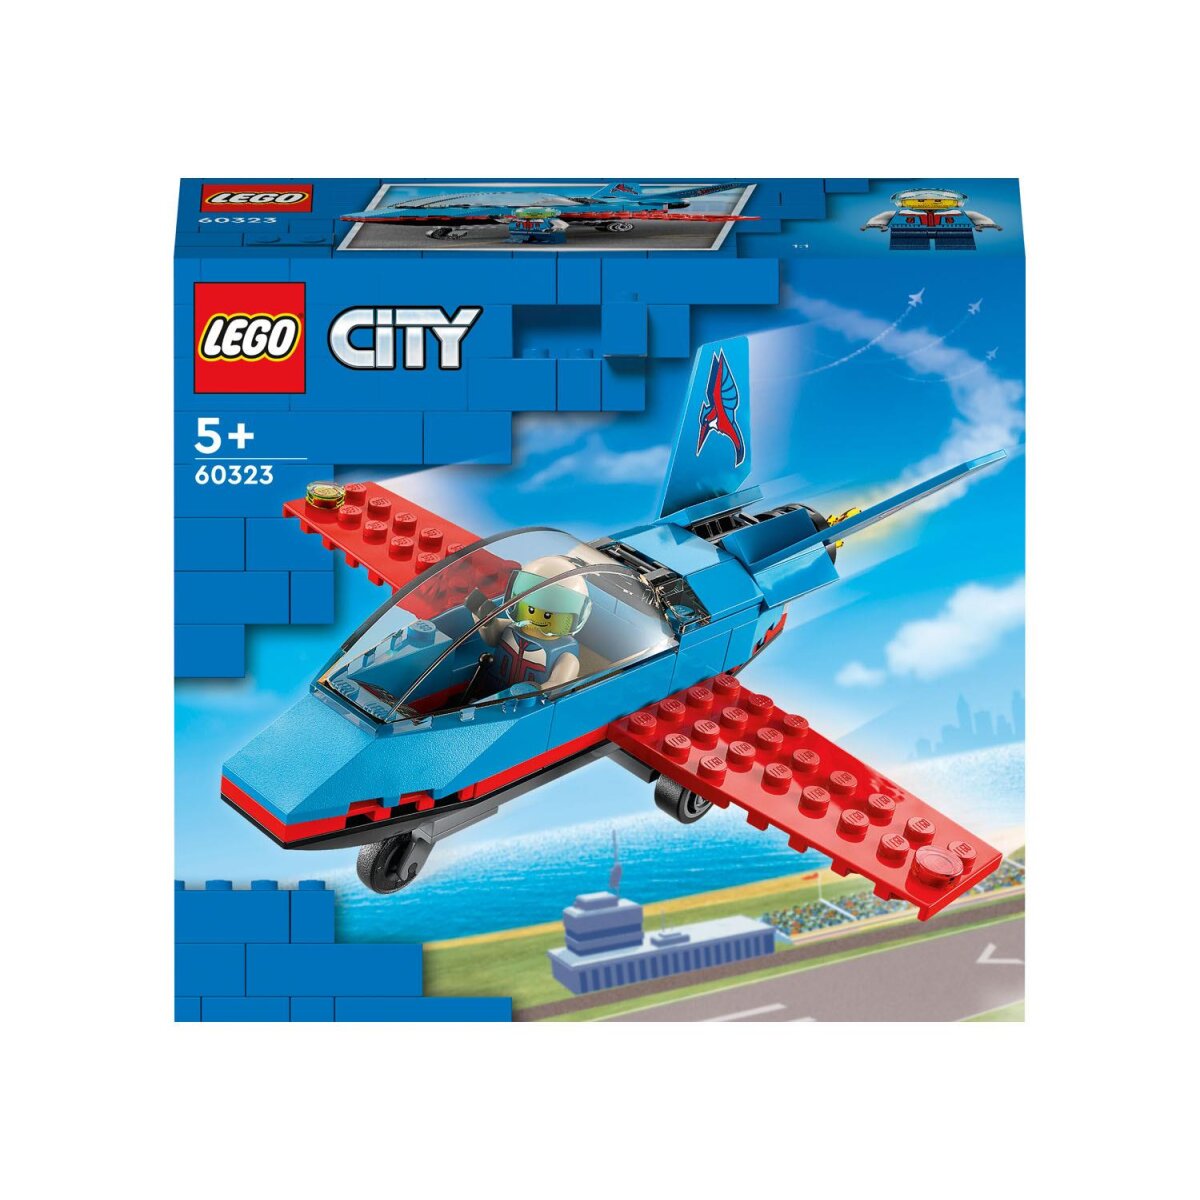 Lego City 60323 »Stuntflugzeug« - B-Ware neuwertig, 7,99 €